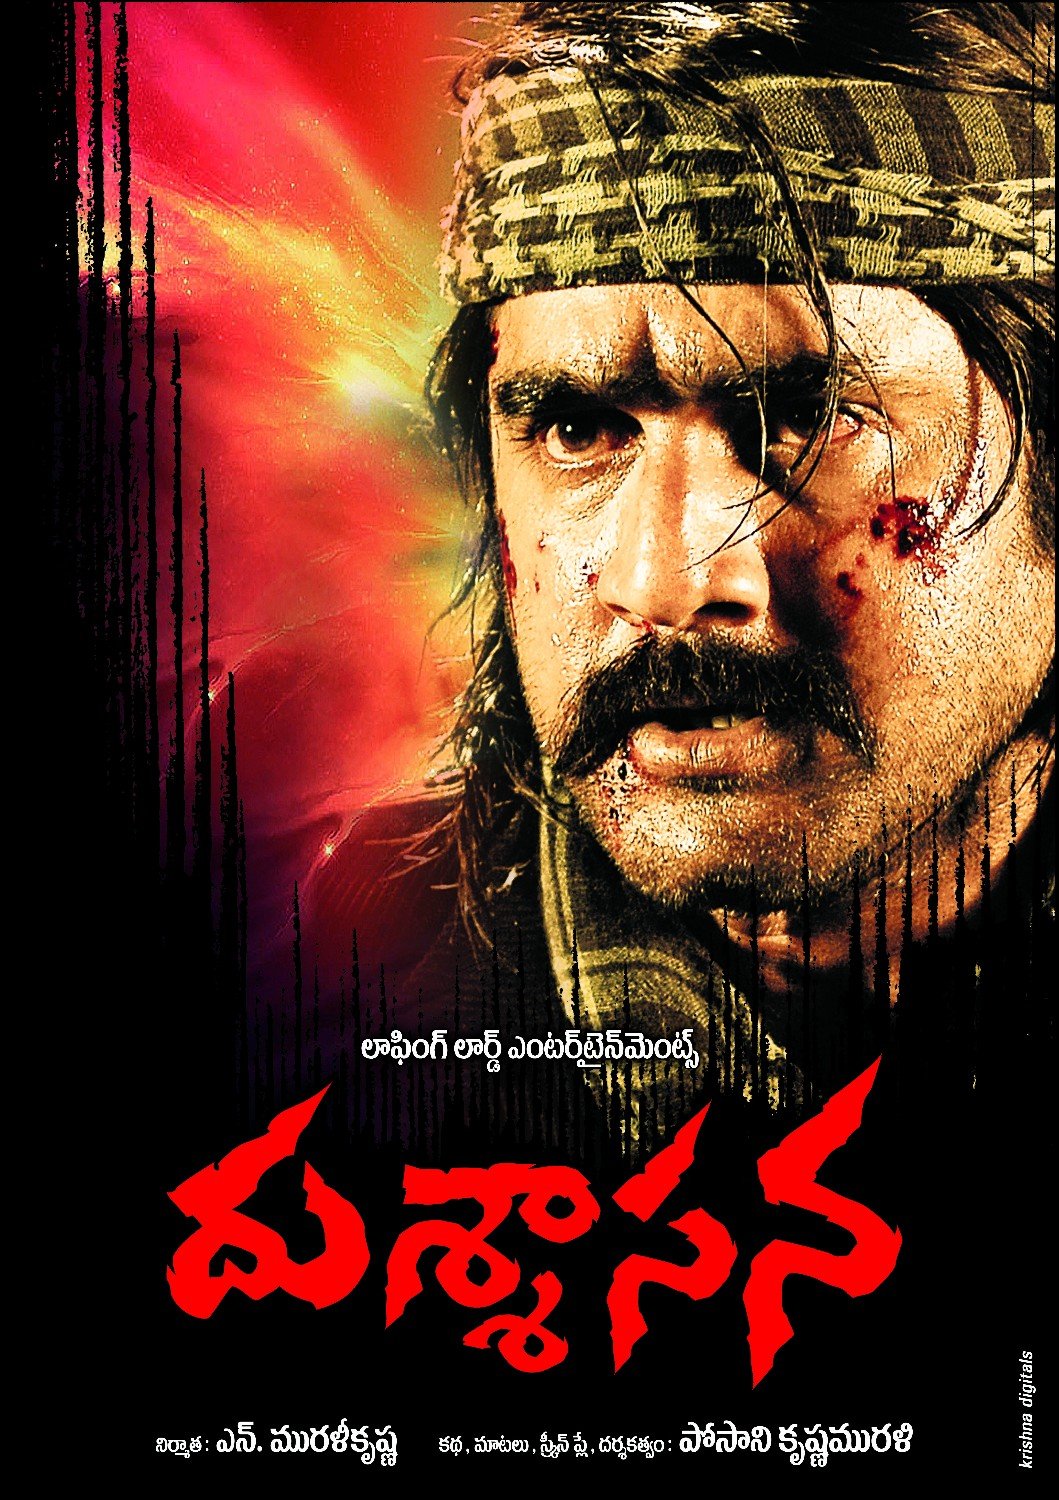 Extra Large Movie Poster Image for Dushasana (#8 of 10)